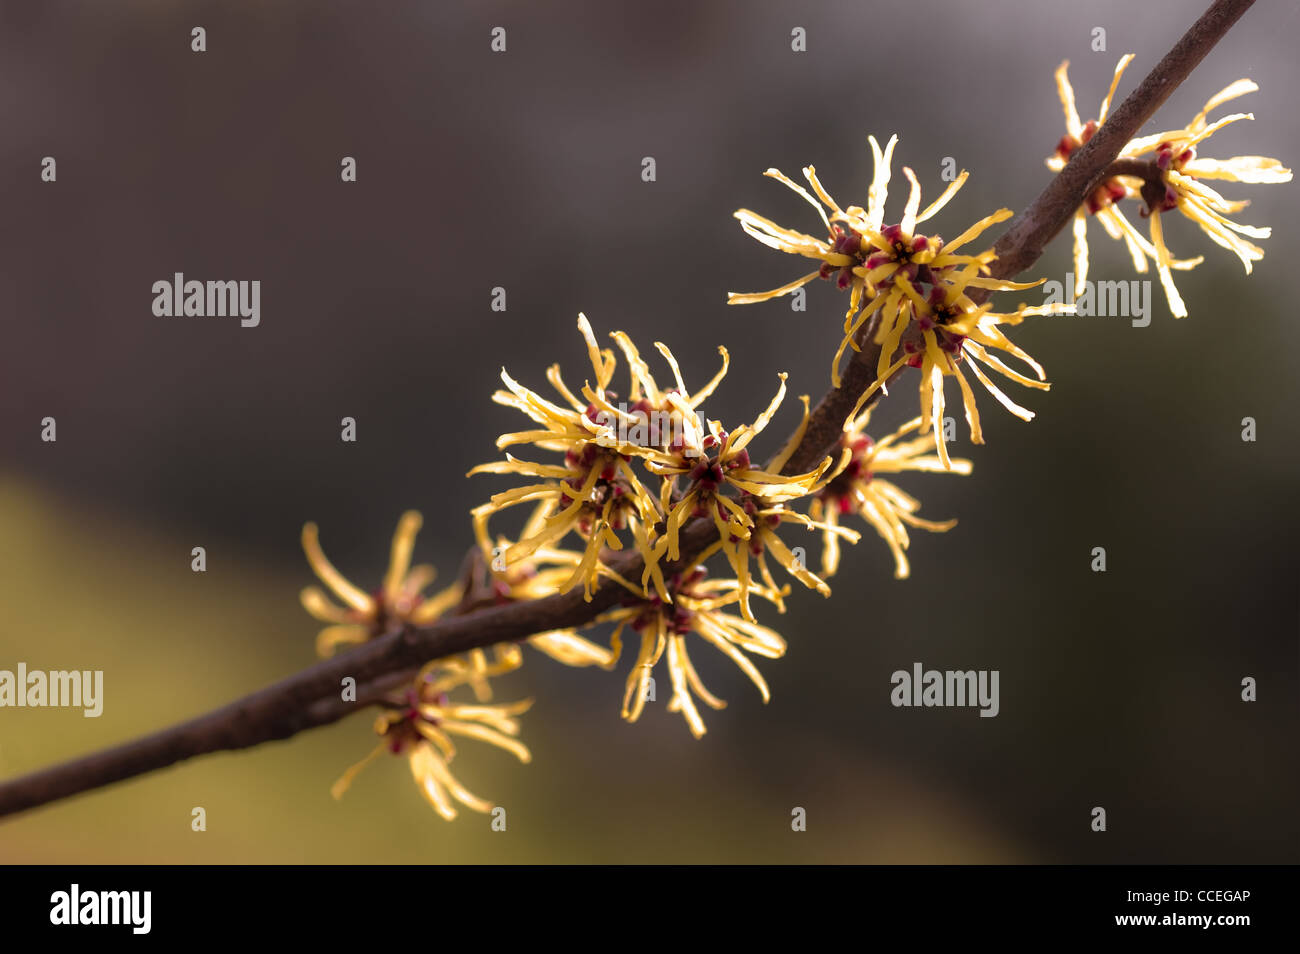 Blühender Zweig des gelben Hamamelis- oder Hamamelis Mollis im späten Winter - Frühjahr Stockfoto